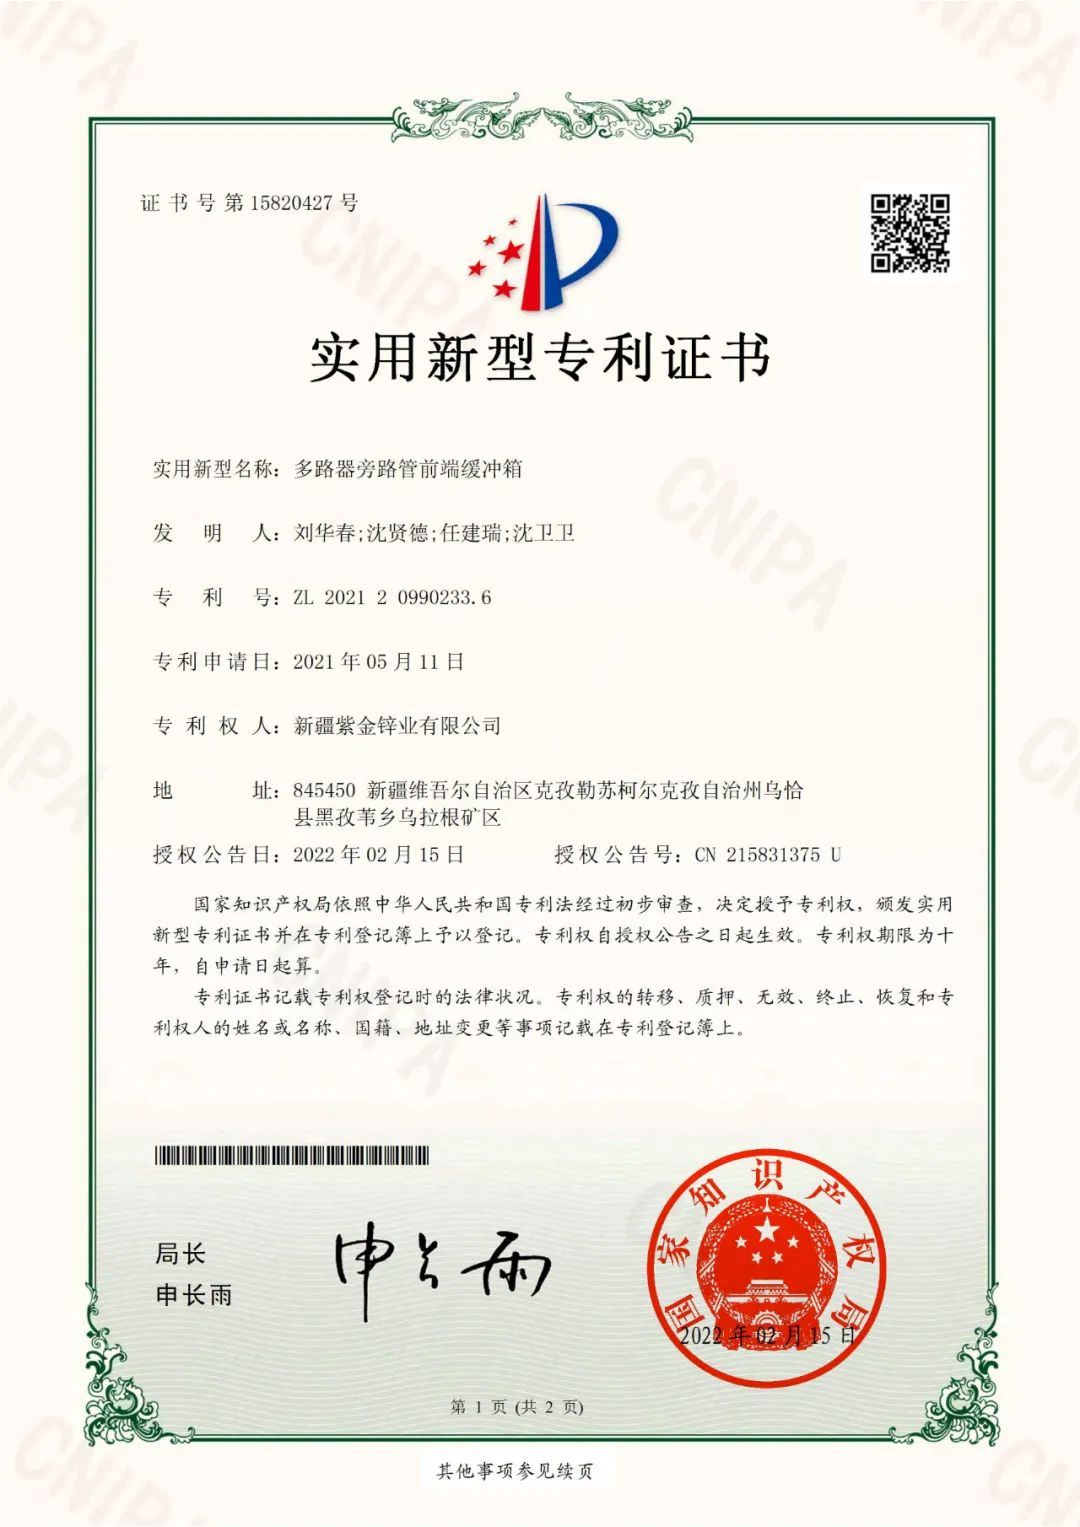 紫金锌业有限公司再获3项专利授权